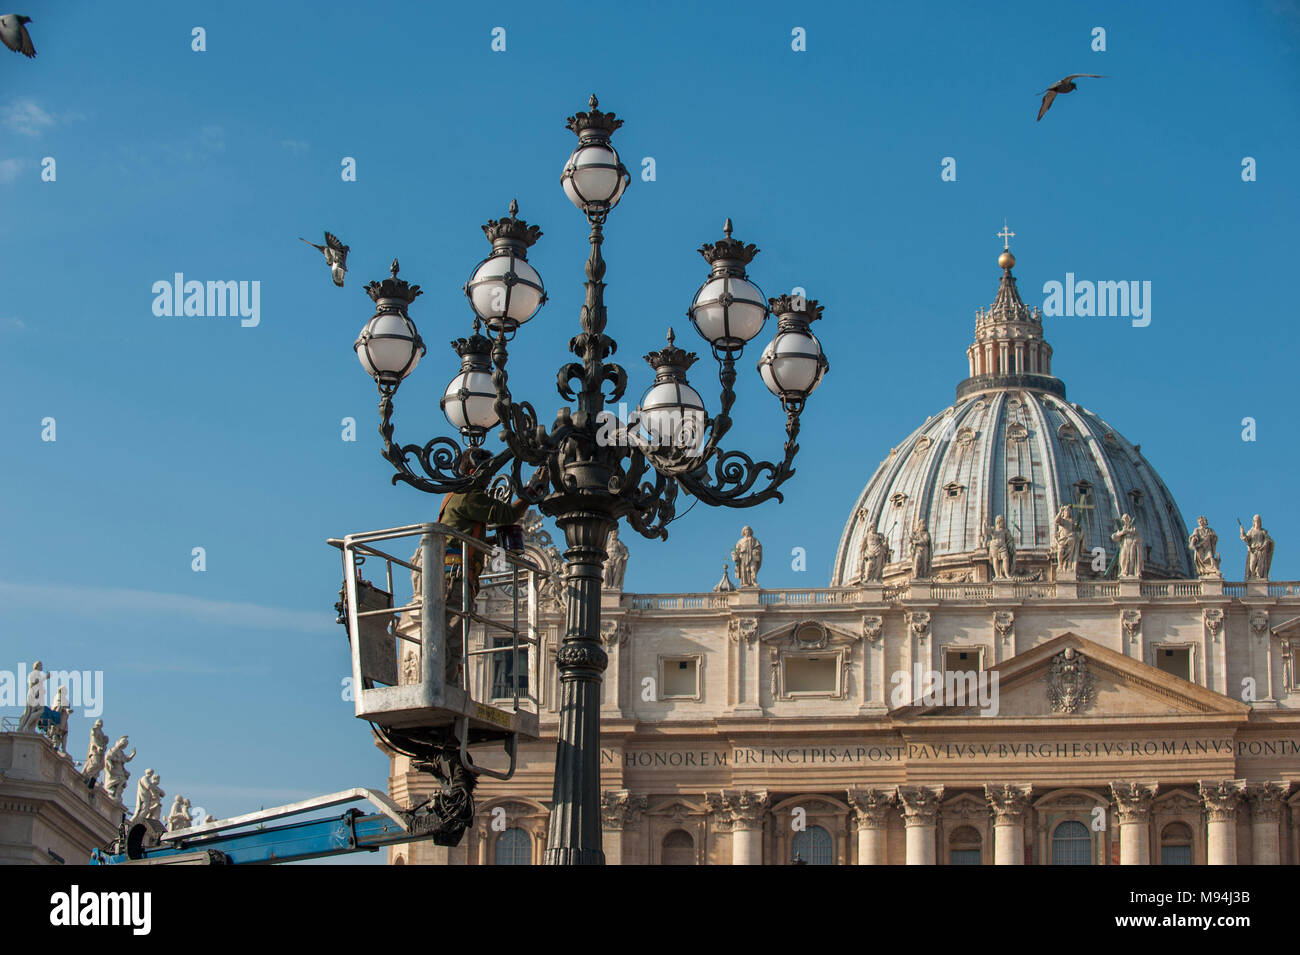 Città del Vaticano. Manutenzione dei lampioni nella piazza della Basilica di San Pietro. Vaticano. Foto Stock